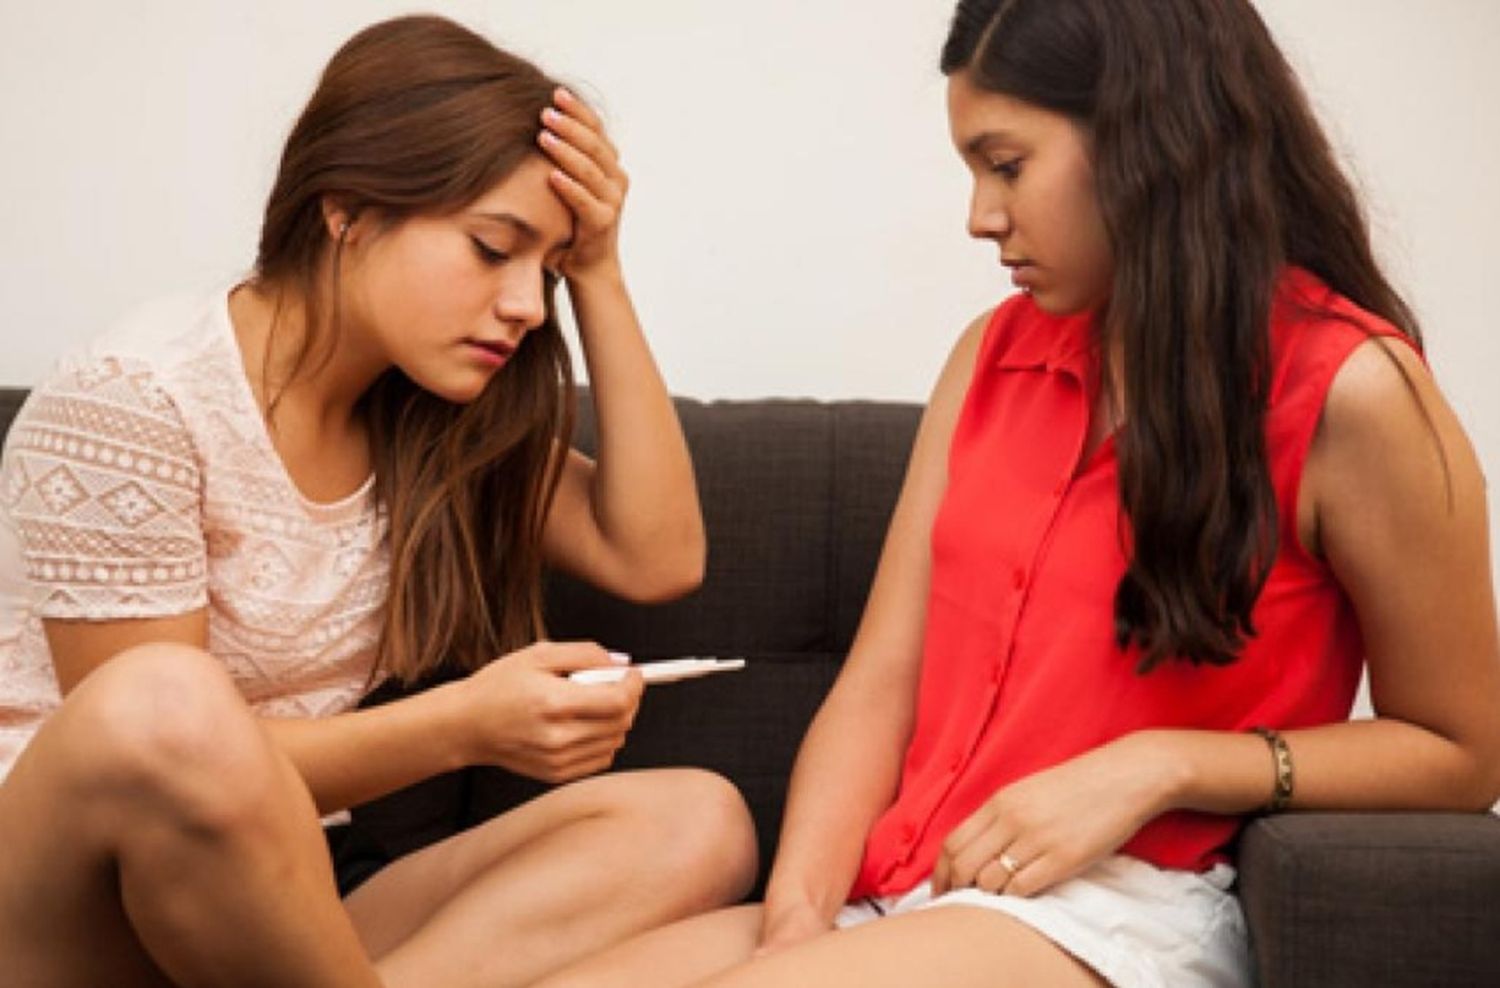 Embarazos en adolescentes: las fallas en Argentina que acrecientan la problemática